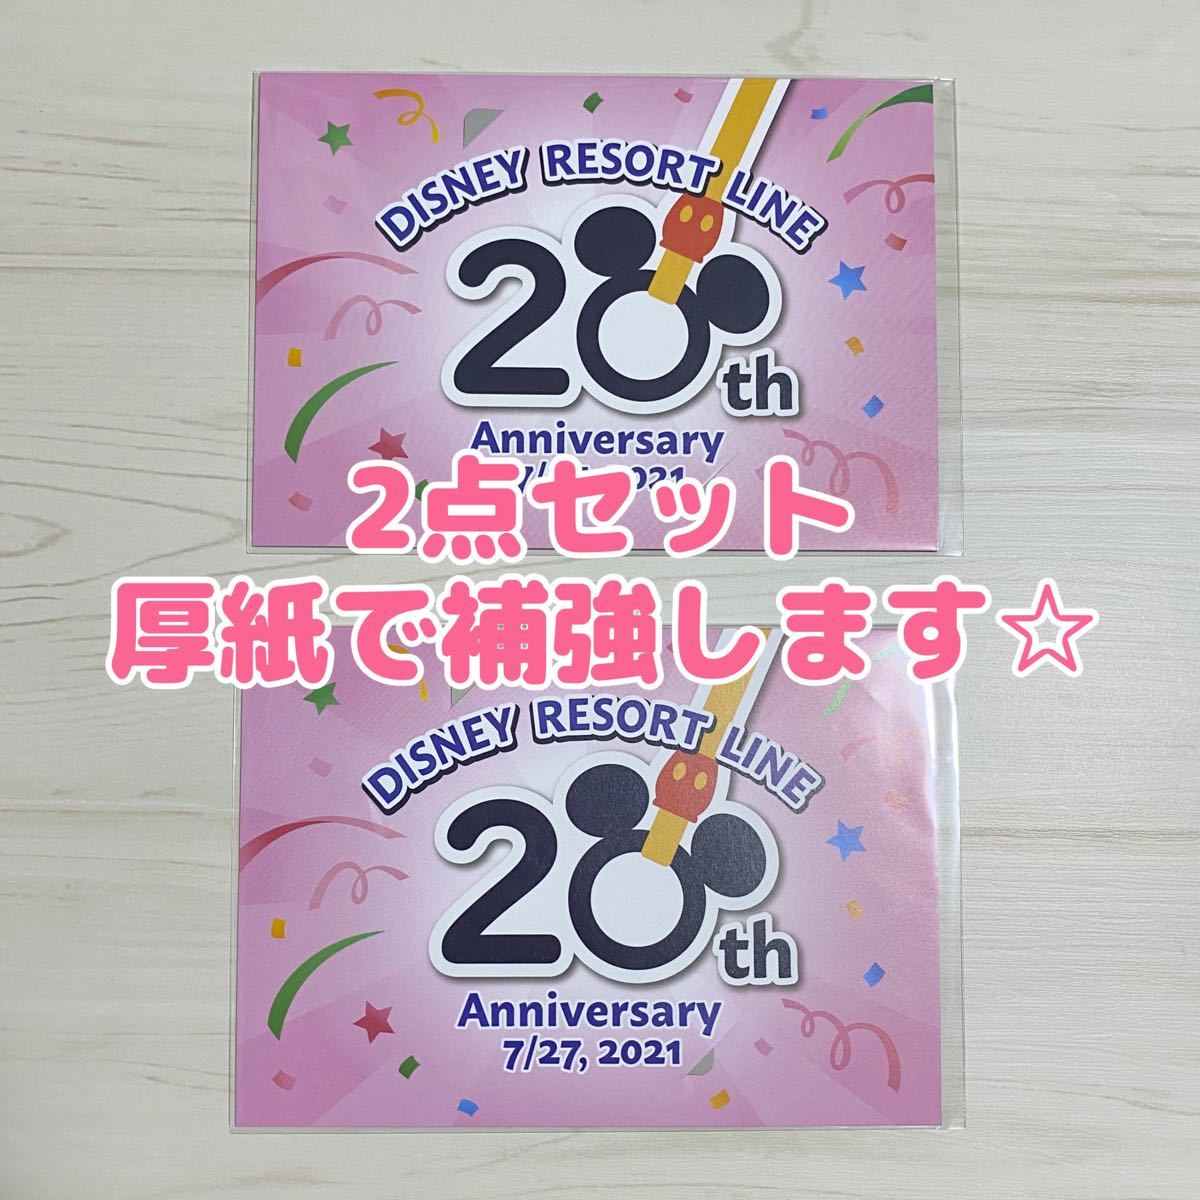 ディズニー リゾートライン 20周年 1デー フリーきっぷ 記念切符 厚紙補強 2セット